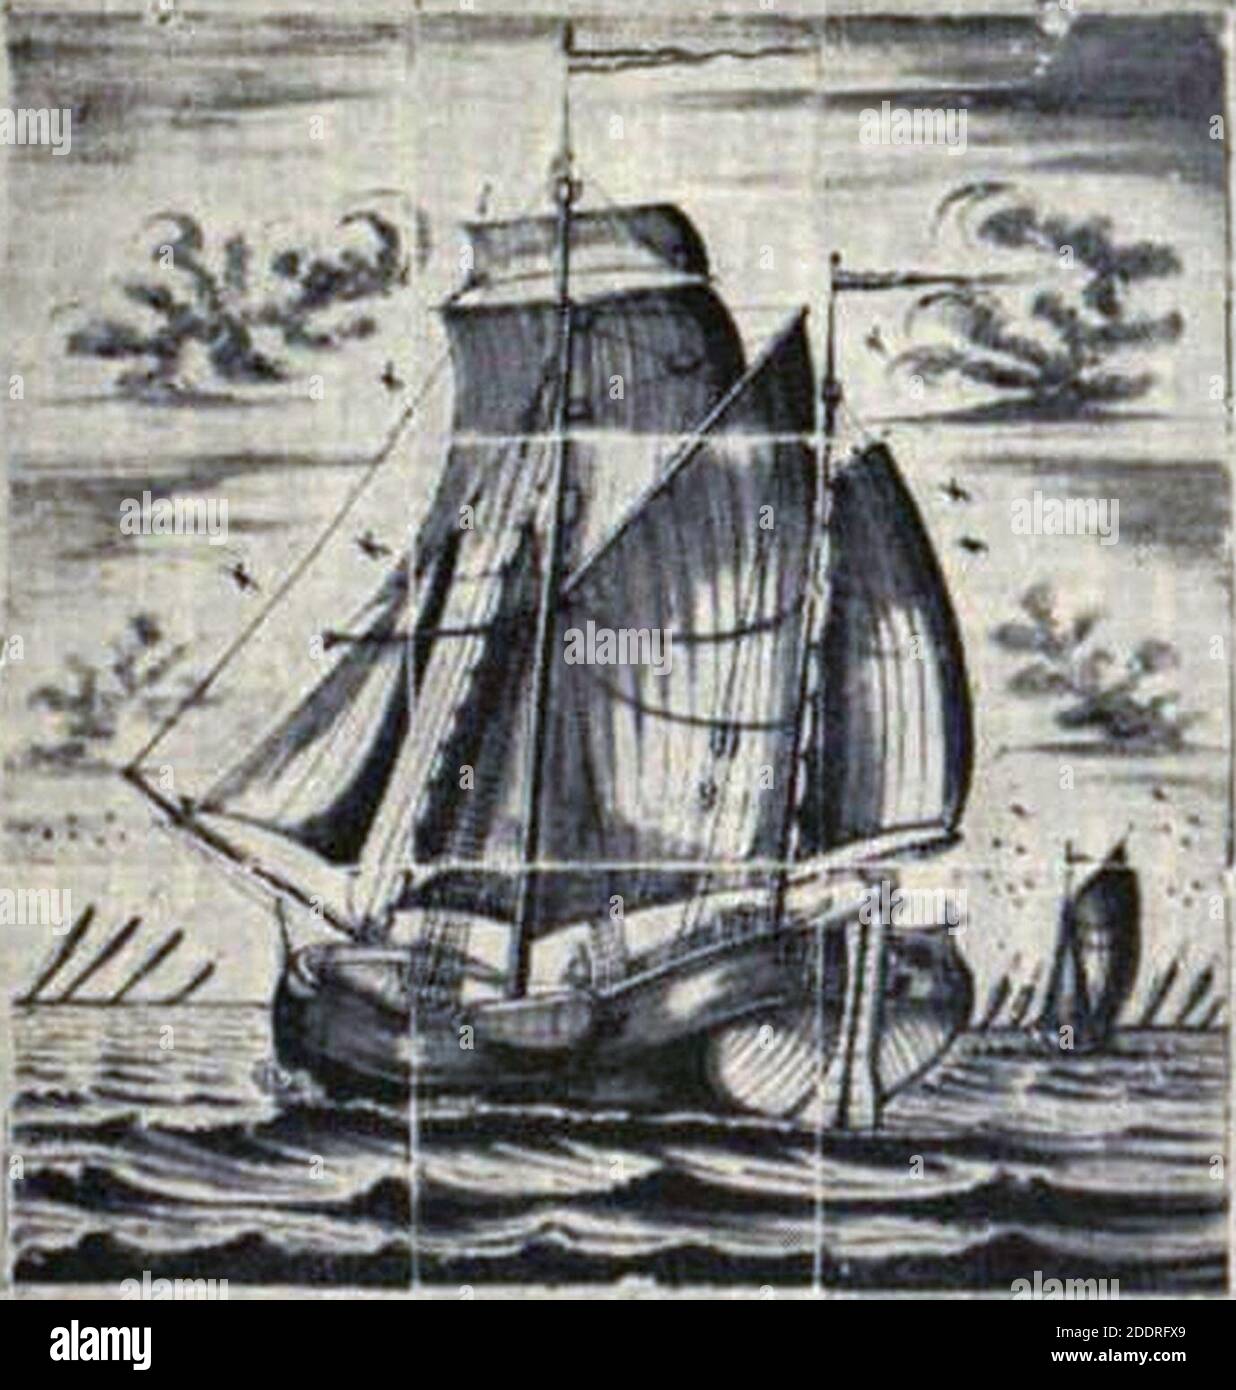 Kofschip door Meindert Jans Vogelzang circa 1795. Stock Photo